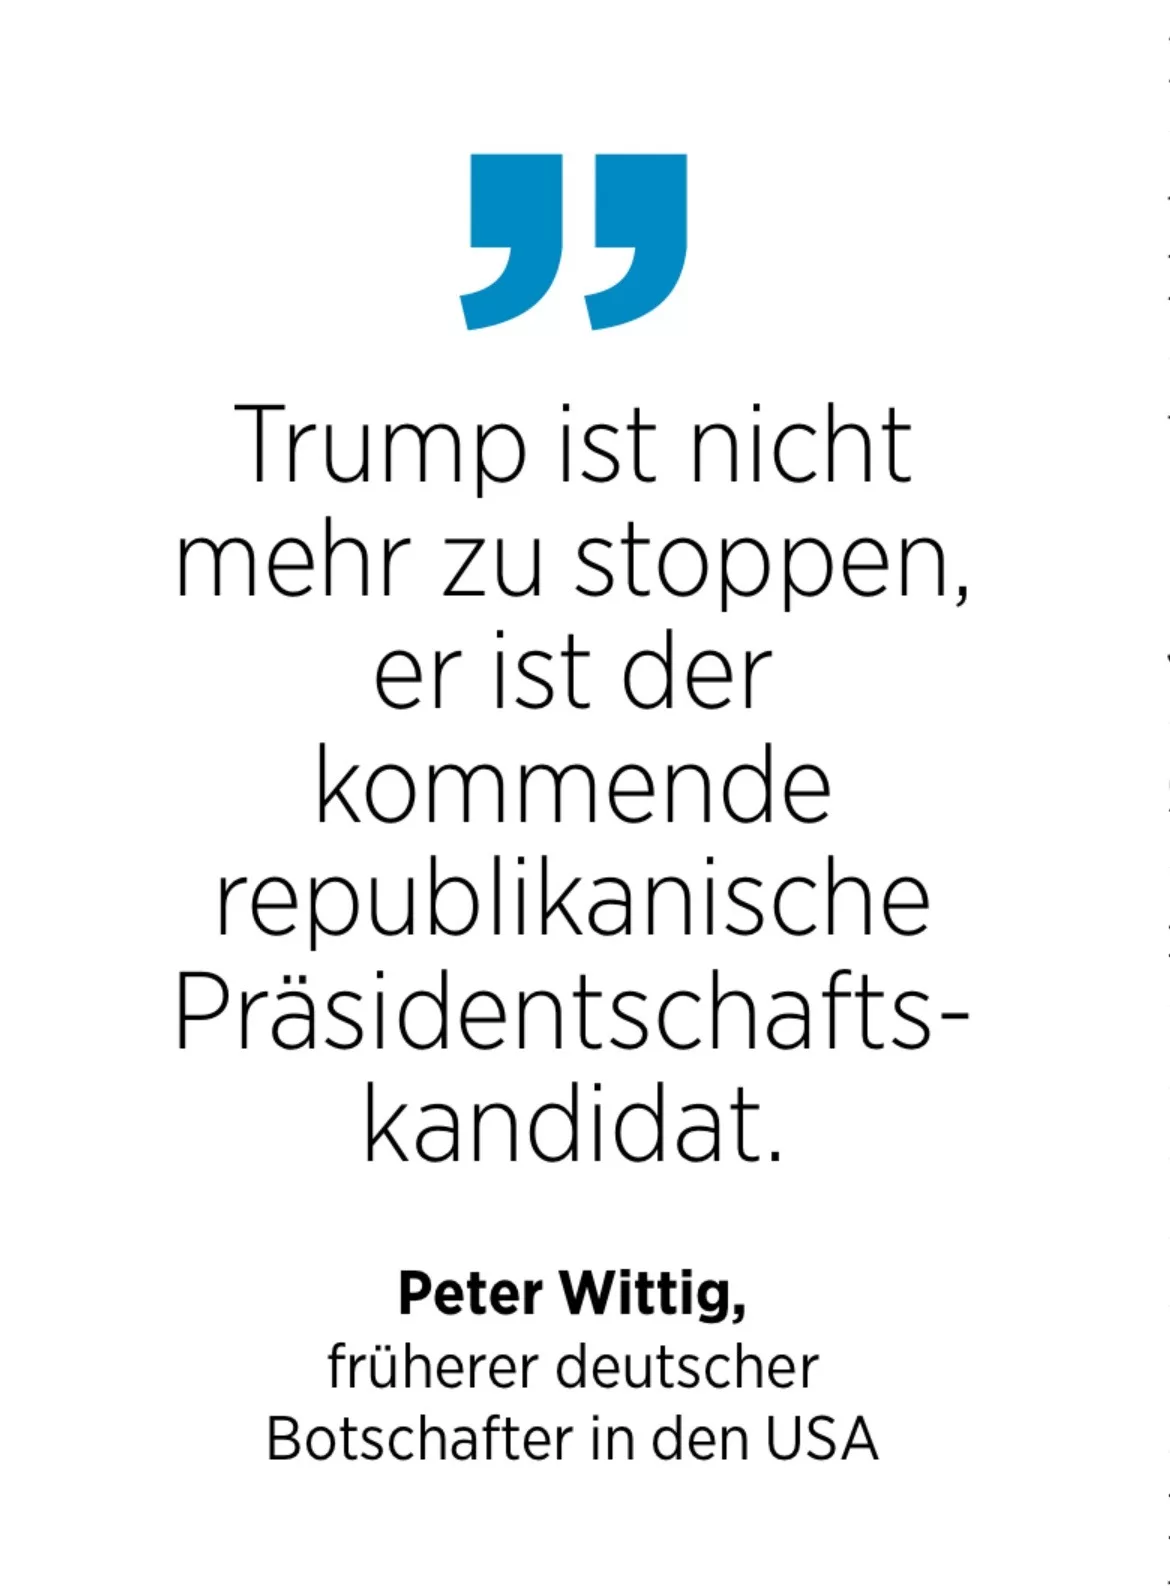 Peter Wittig, früherer deutscher Botschafter in den USA: Trump ist nicht mehr zu stoppen, er ist der kommende republikanische Präsidentschafts-kandidat.